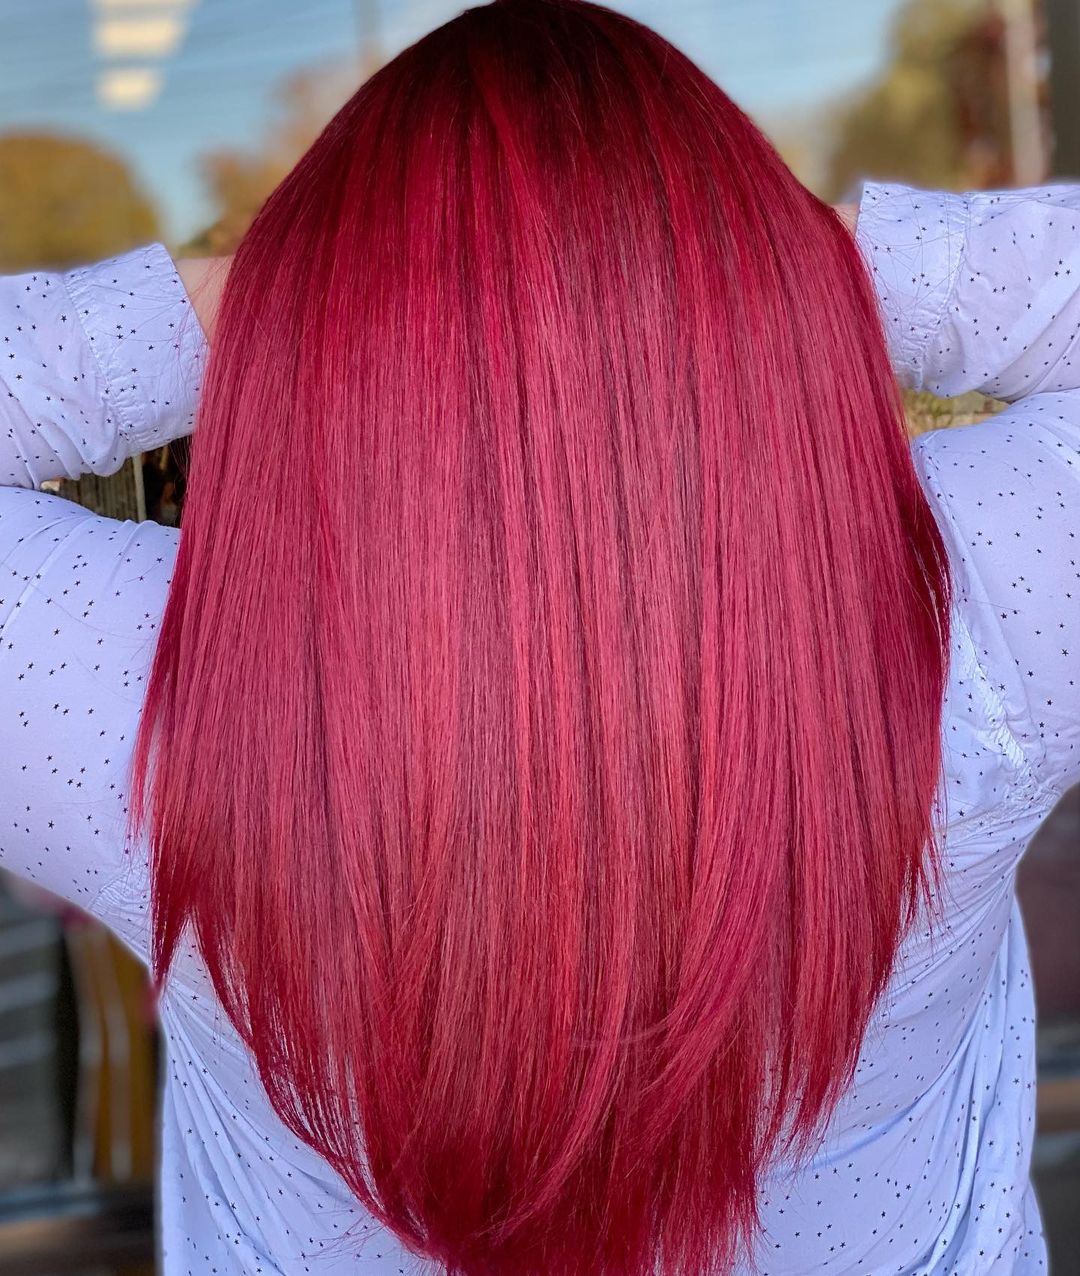 cheveux rouge rubis cerise